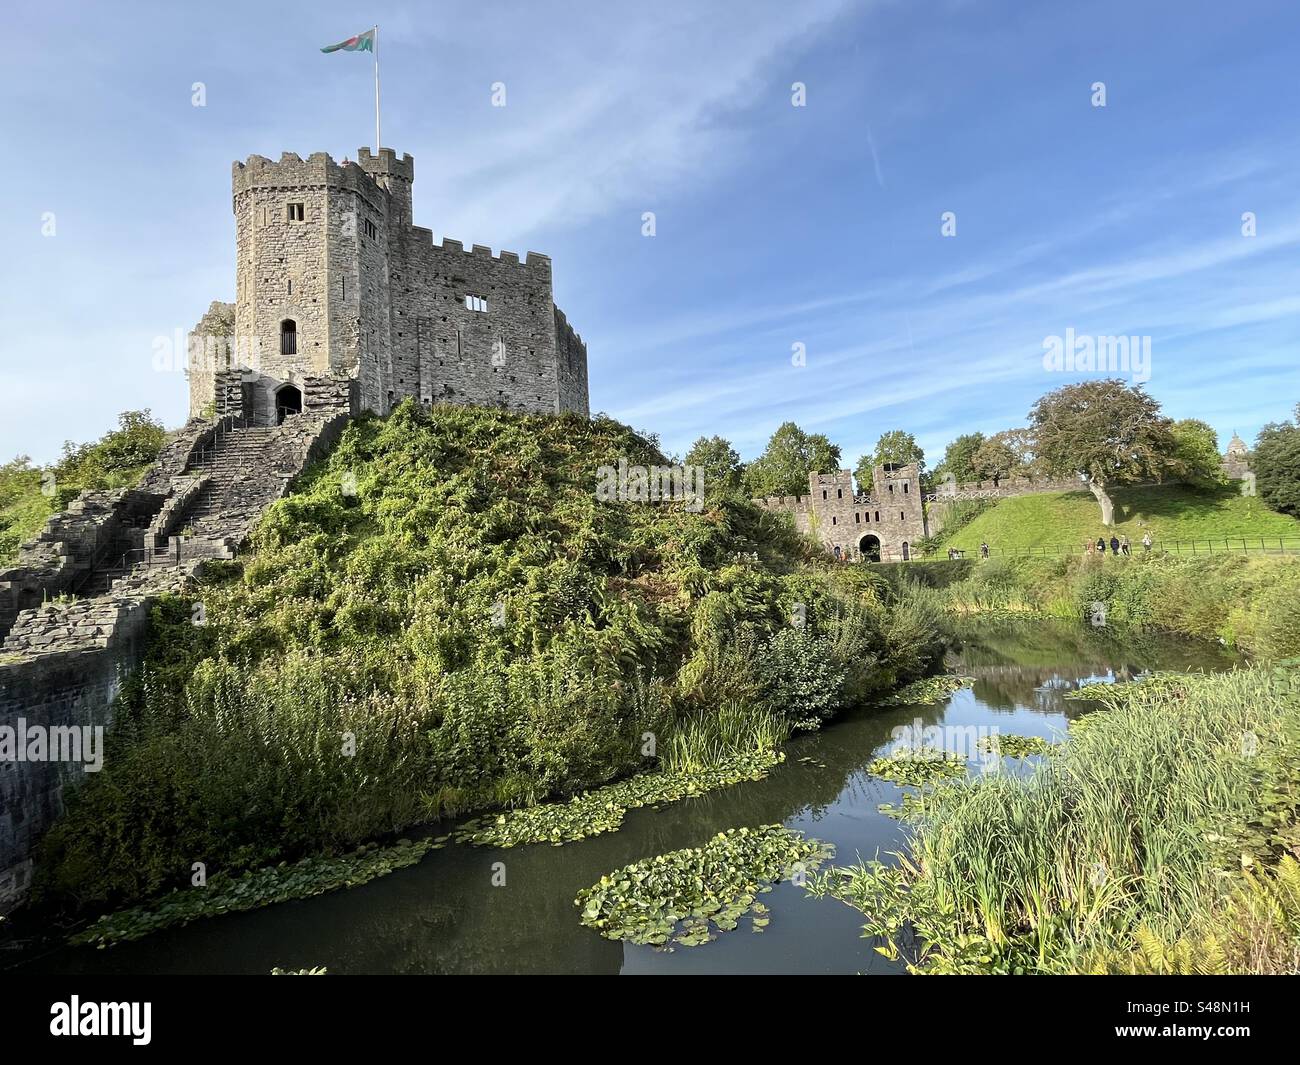 Cardiff Castle, eine mittelalterliche Burg im Stadtzentrum von Cardiff, Wales. Die ursprüngliche Motte und die Burgburg wurden im 11. Jahrhundert von normannischen Eindringlingen auf einer Festung aus dem 3. Jahrhundert erbaut. Stockfoto